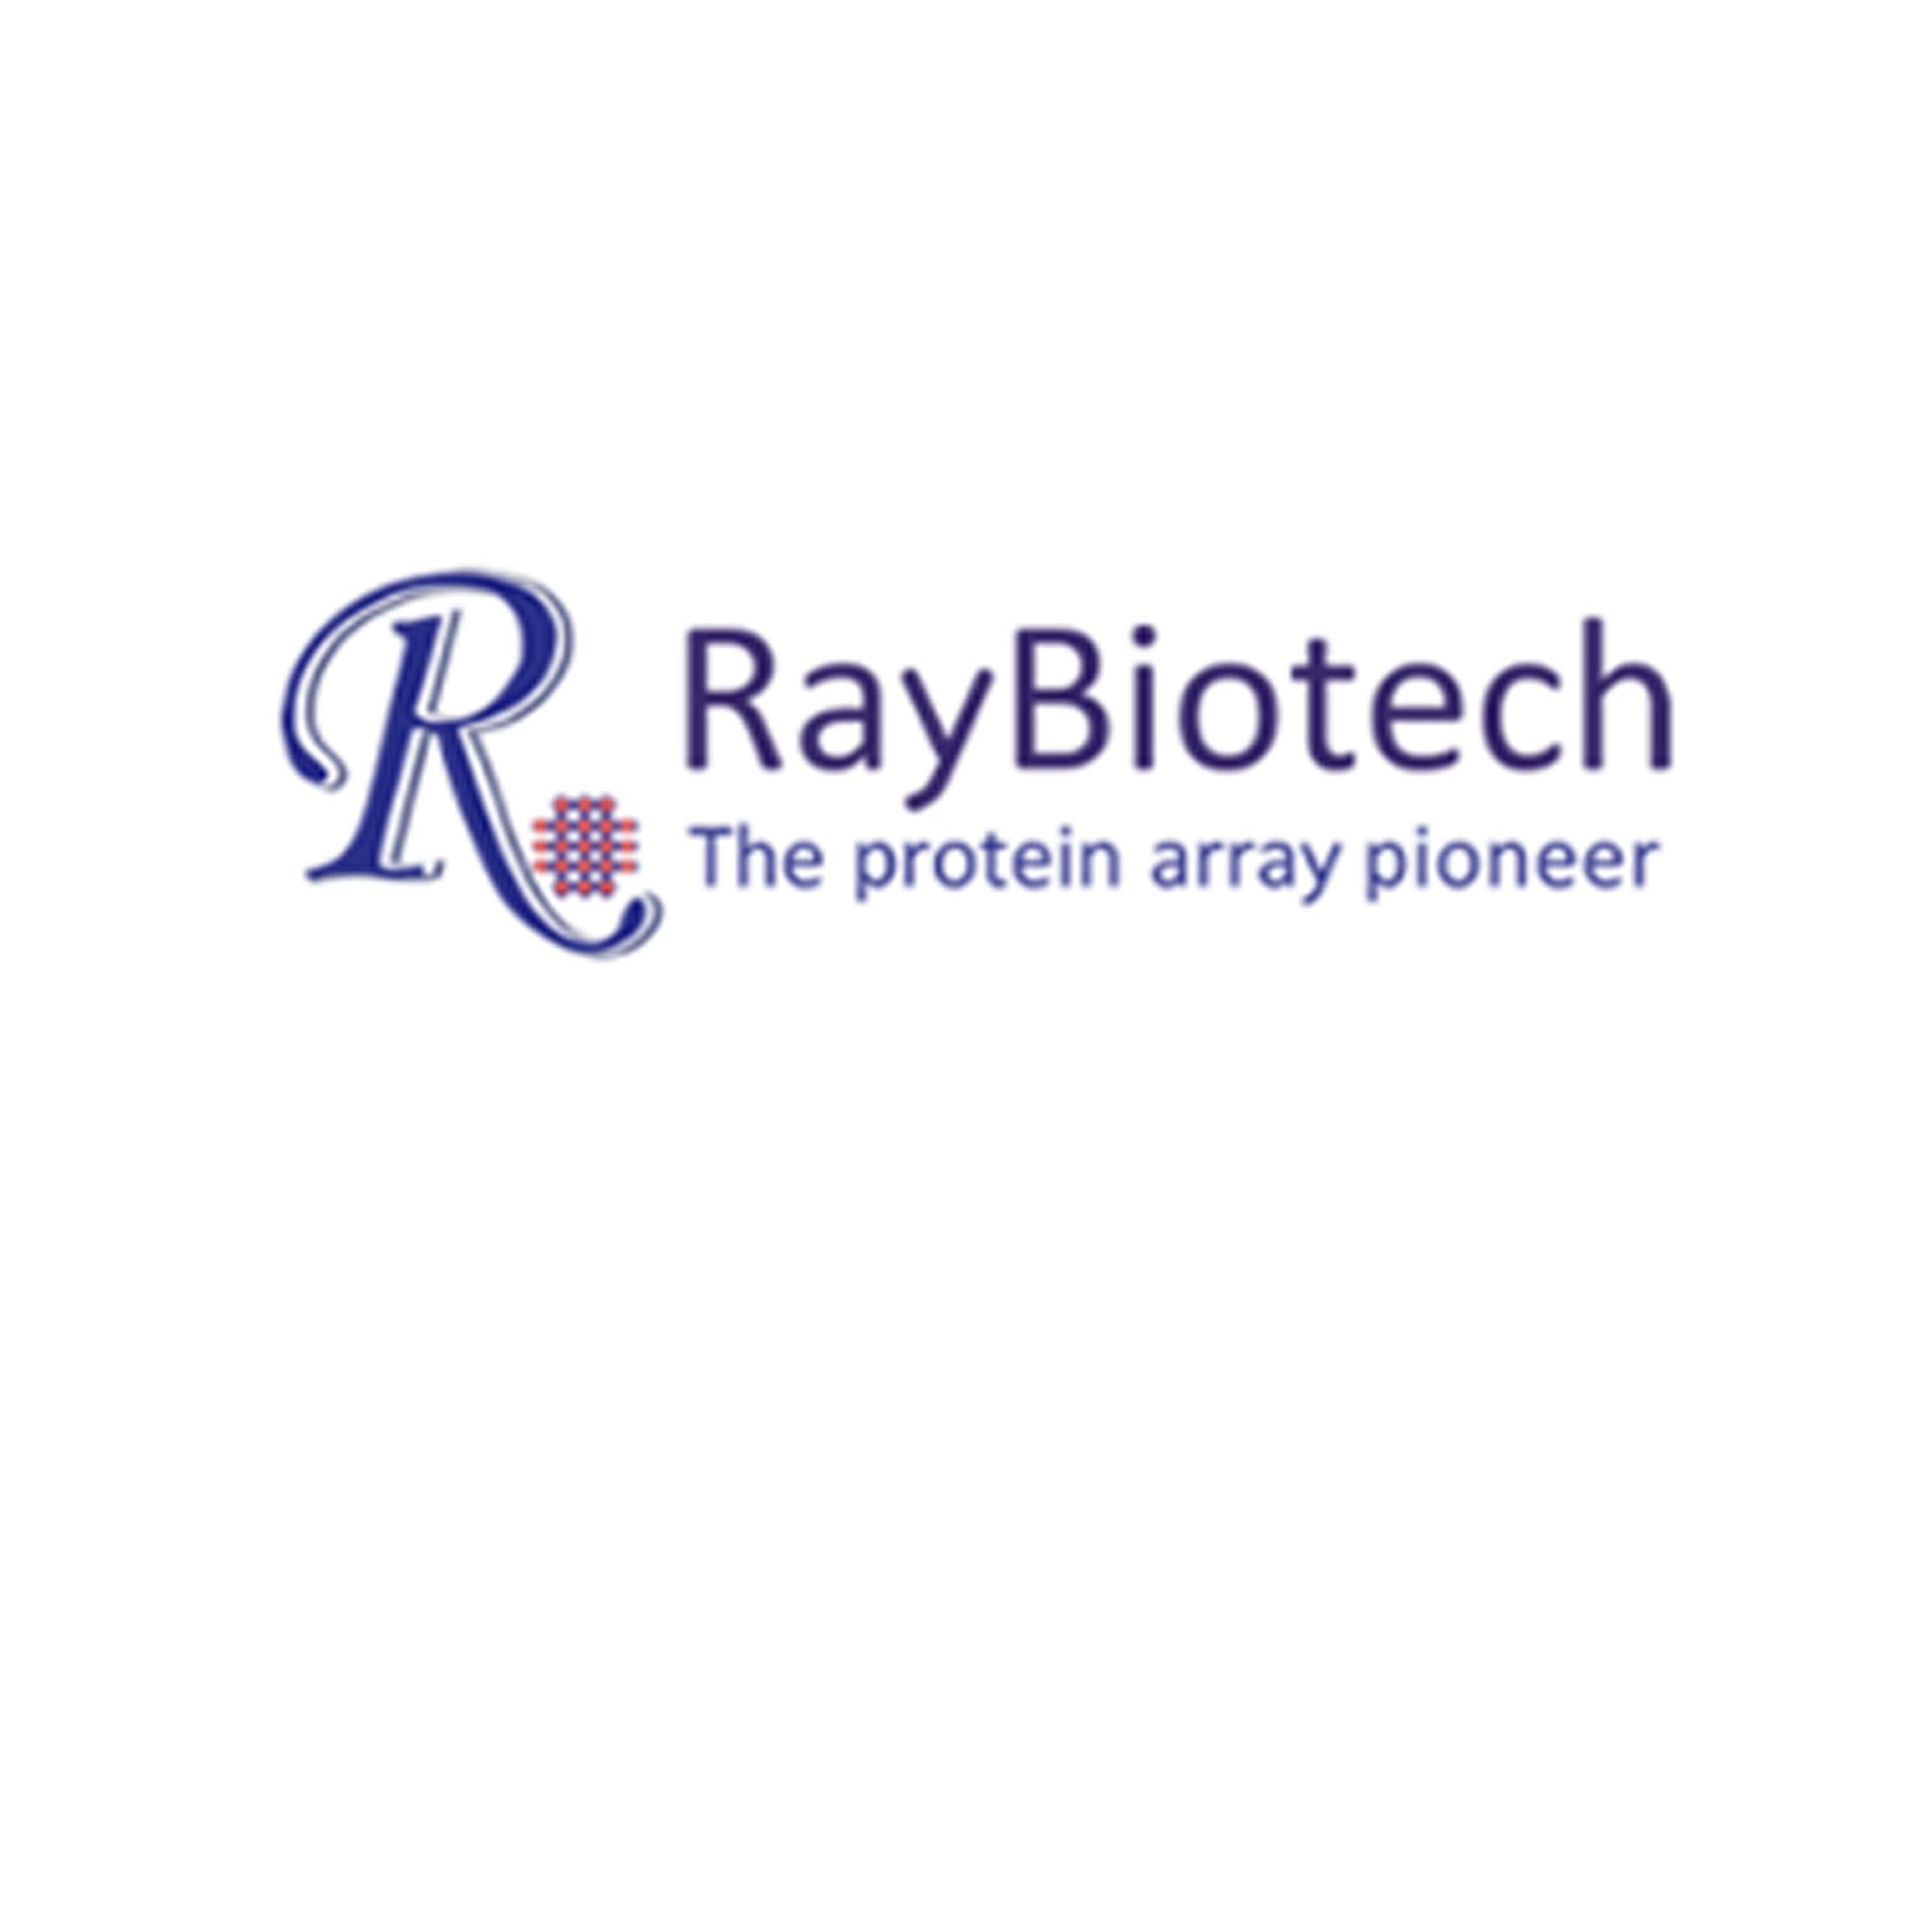 Raybiotech抗体芯片、ELISA/EIA、抗原抗体为主的酶免产品